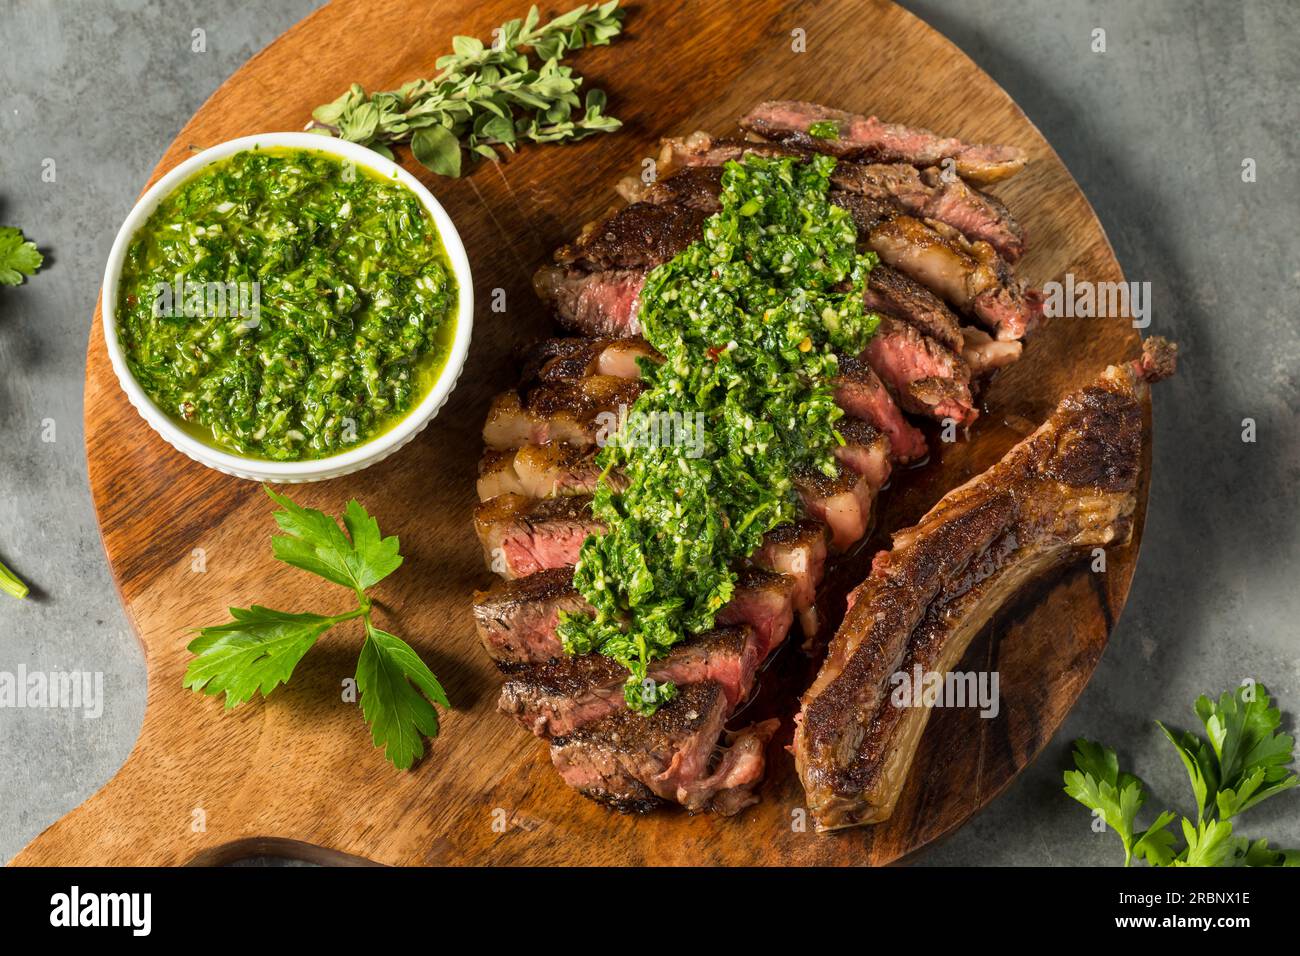 Homemade Chimichurri Sauce and Ribeye Steak with Garlic Stock Photo